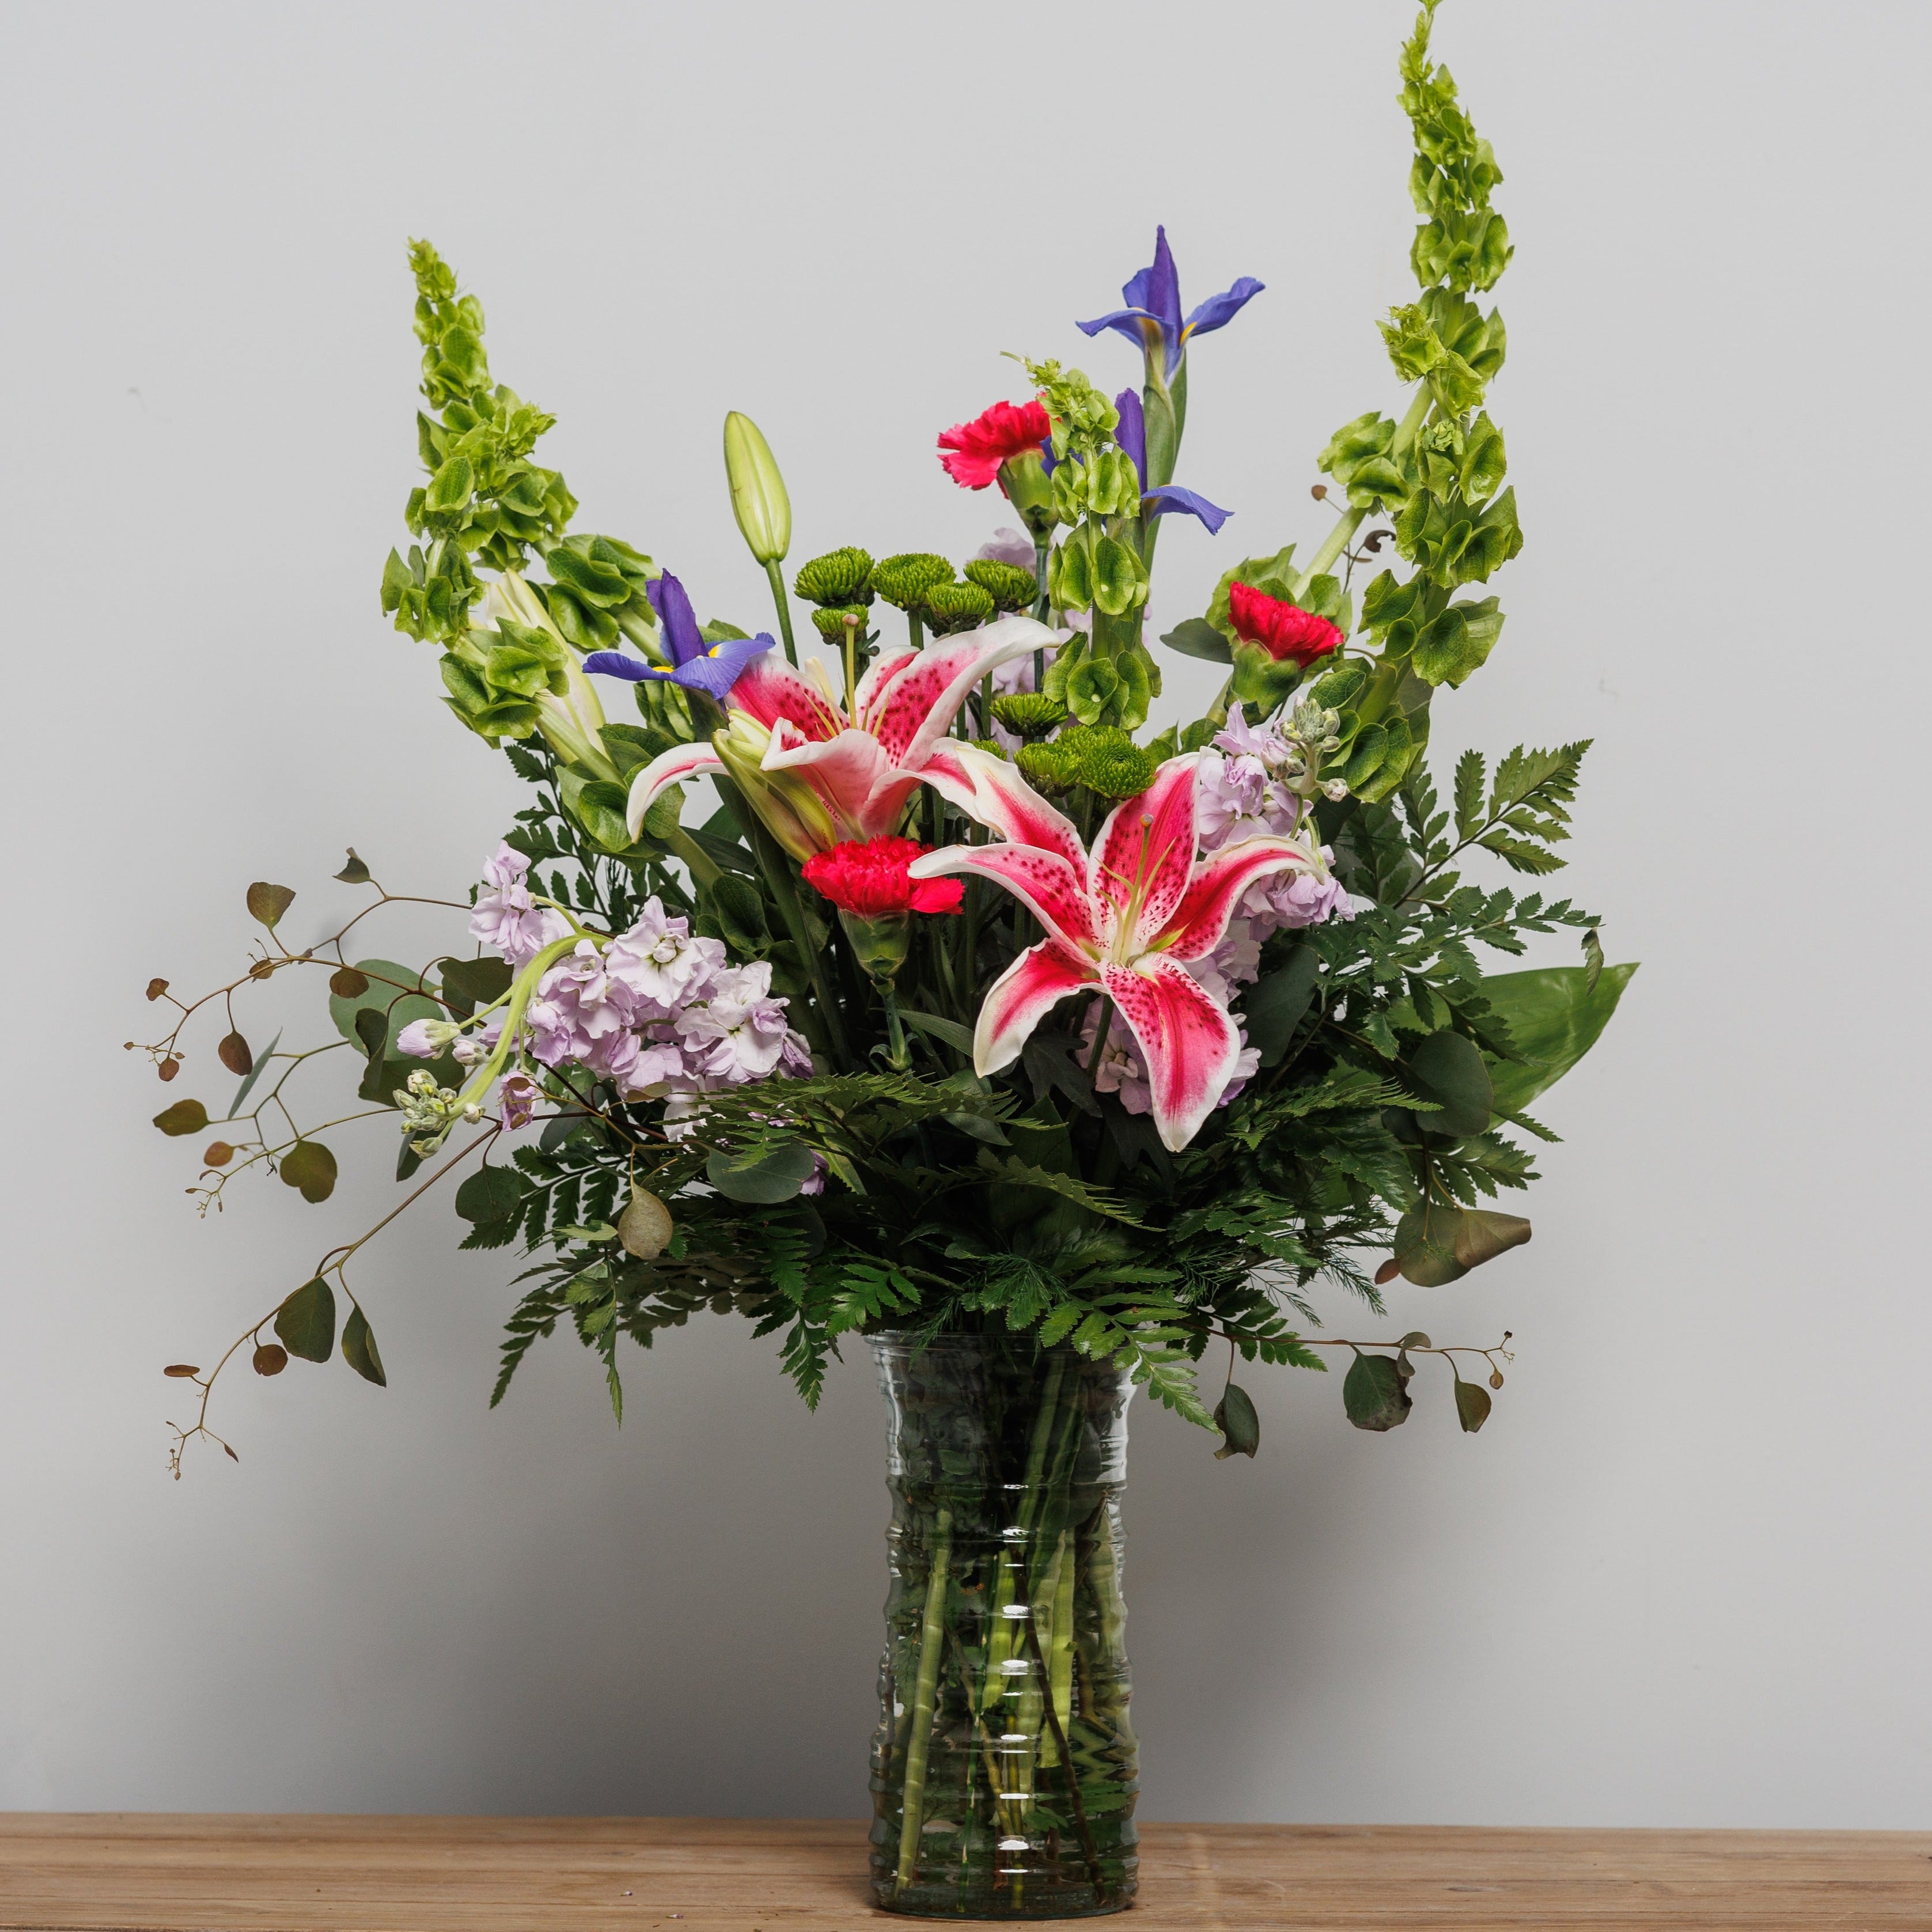 A flower arrangement with iris, bells of Ireland and stargazer lilies.